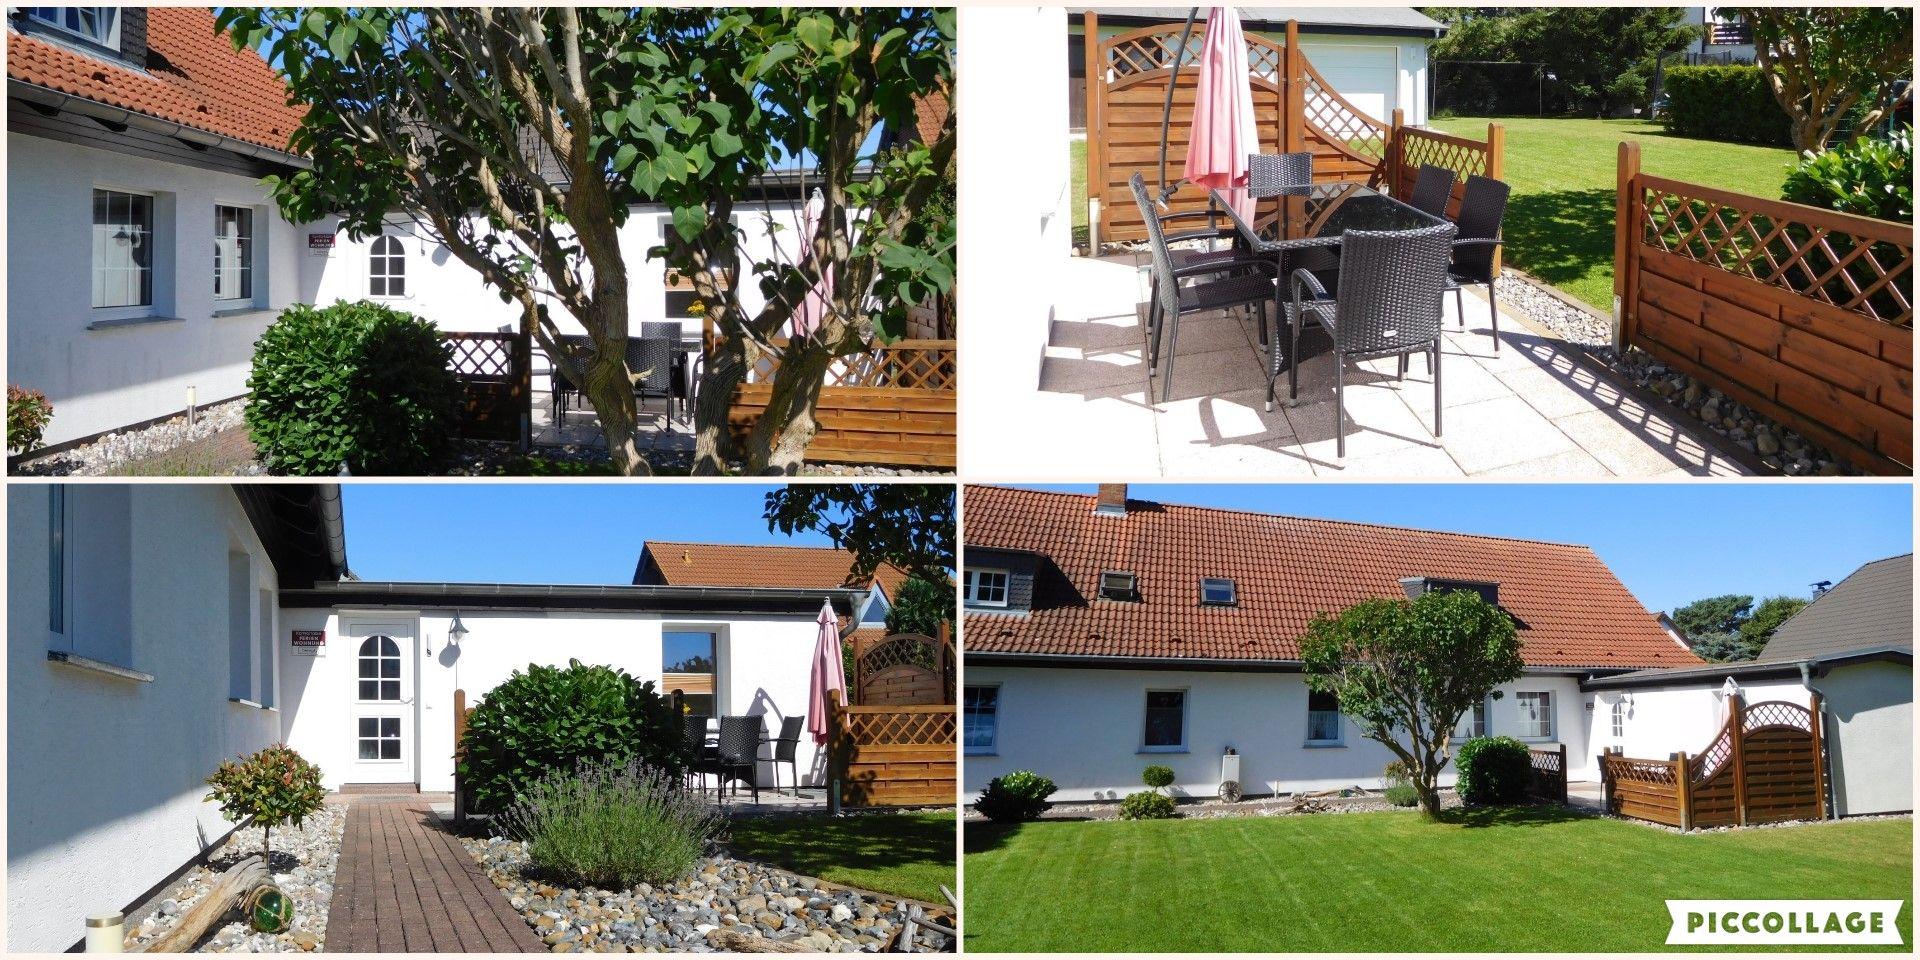 Ferienwohnung für 5 Personen ca. 85 m² i Ferienhaus an der Ostsee